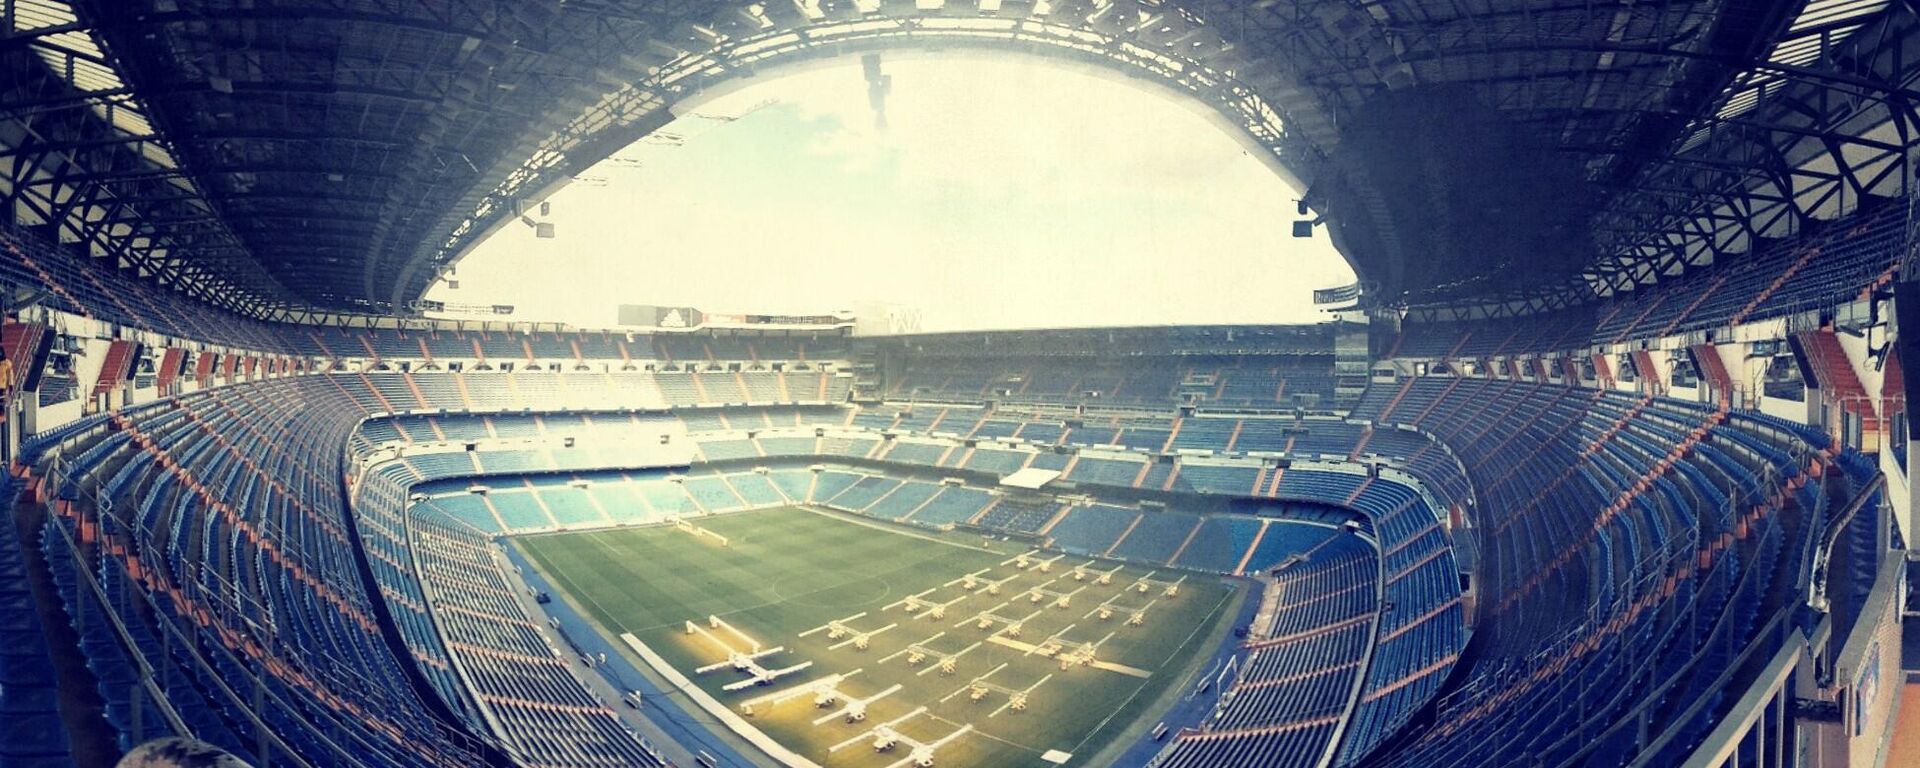 El estadio Santiago Bernabéu de Real Madrid - Sputnik Mundo, 1920, 19.04.2021